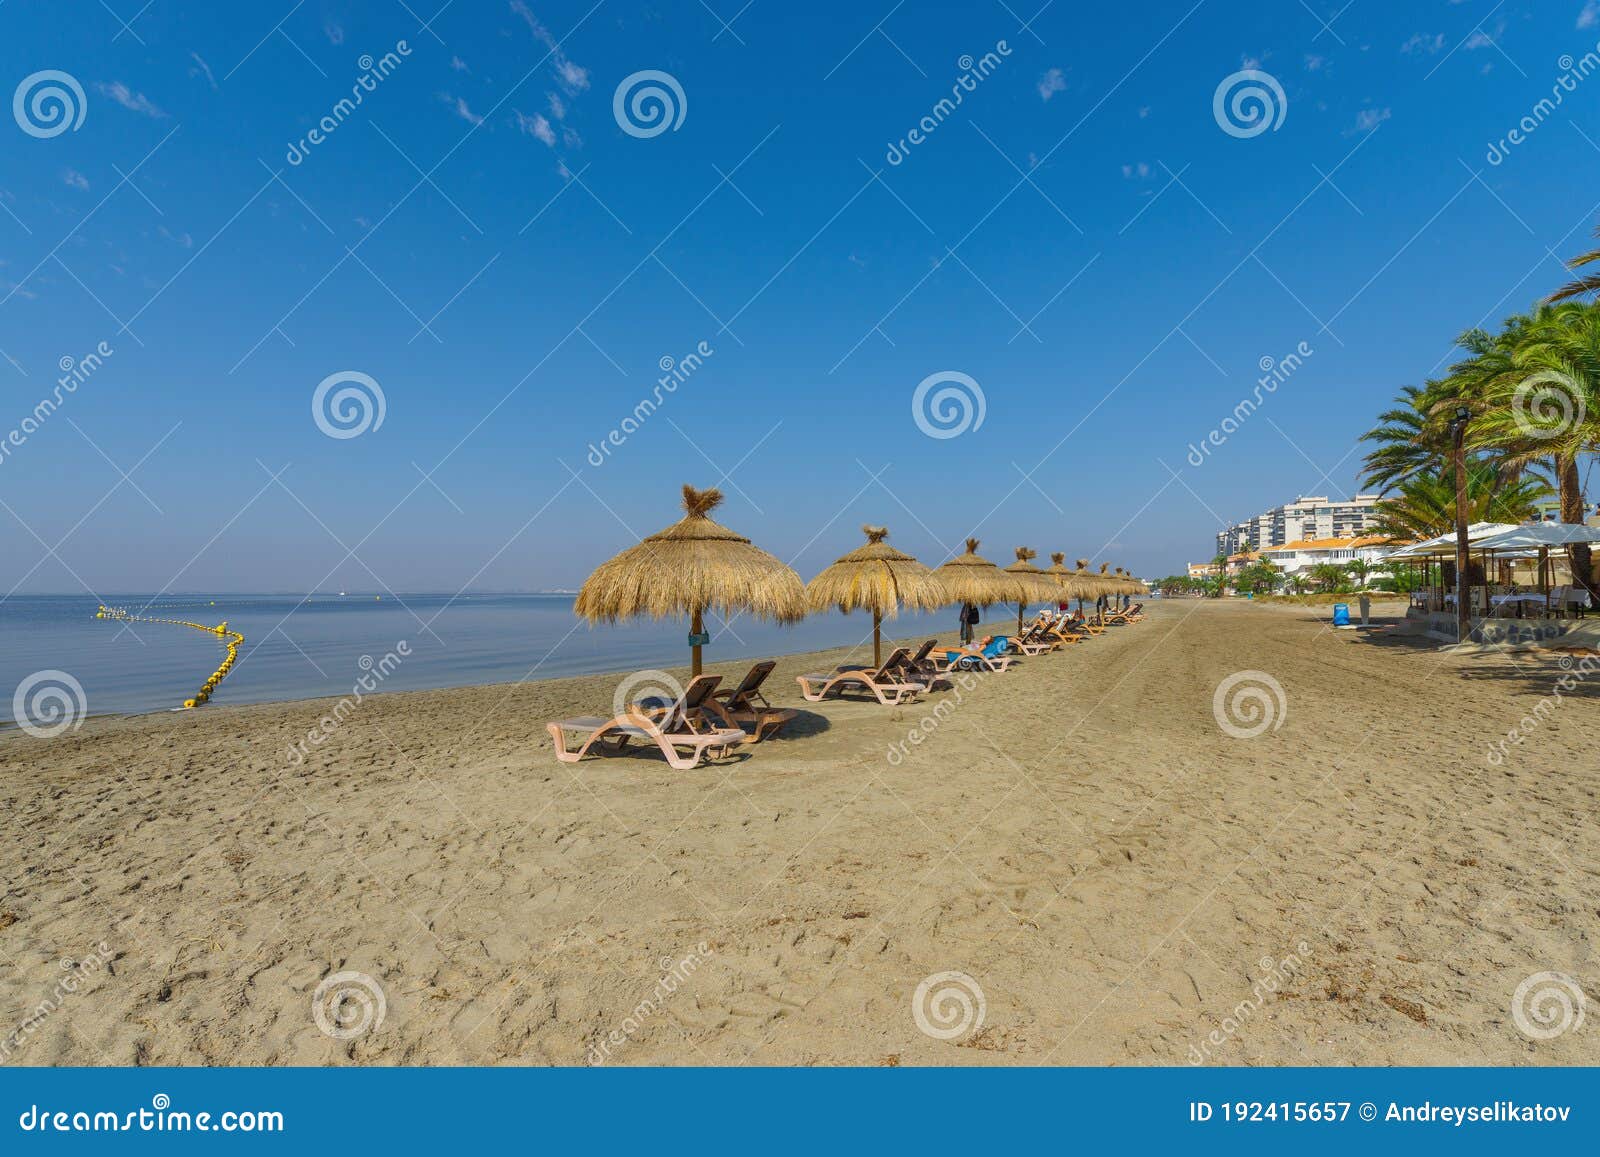 umbrellas on the beach by the sea. la manga del mar menor